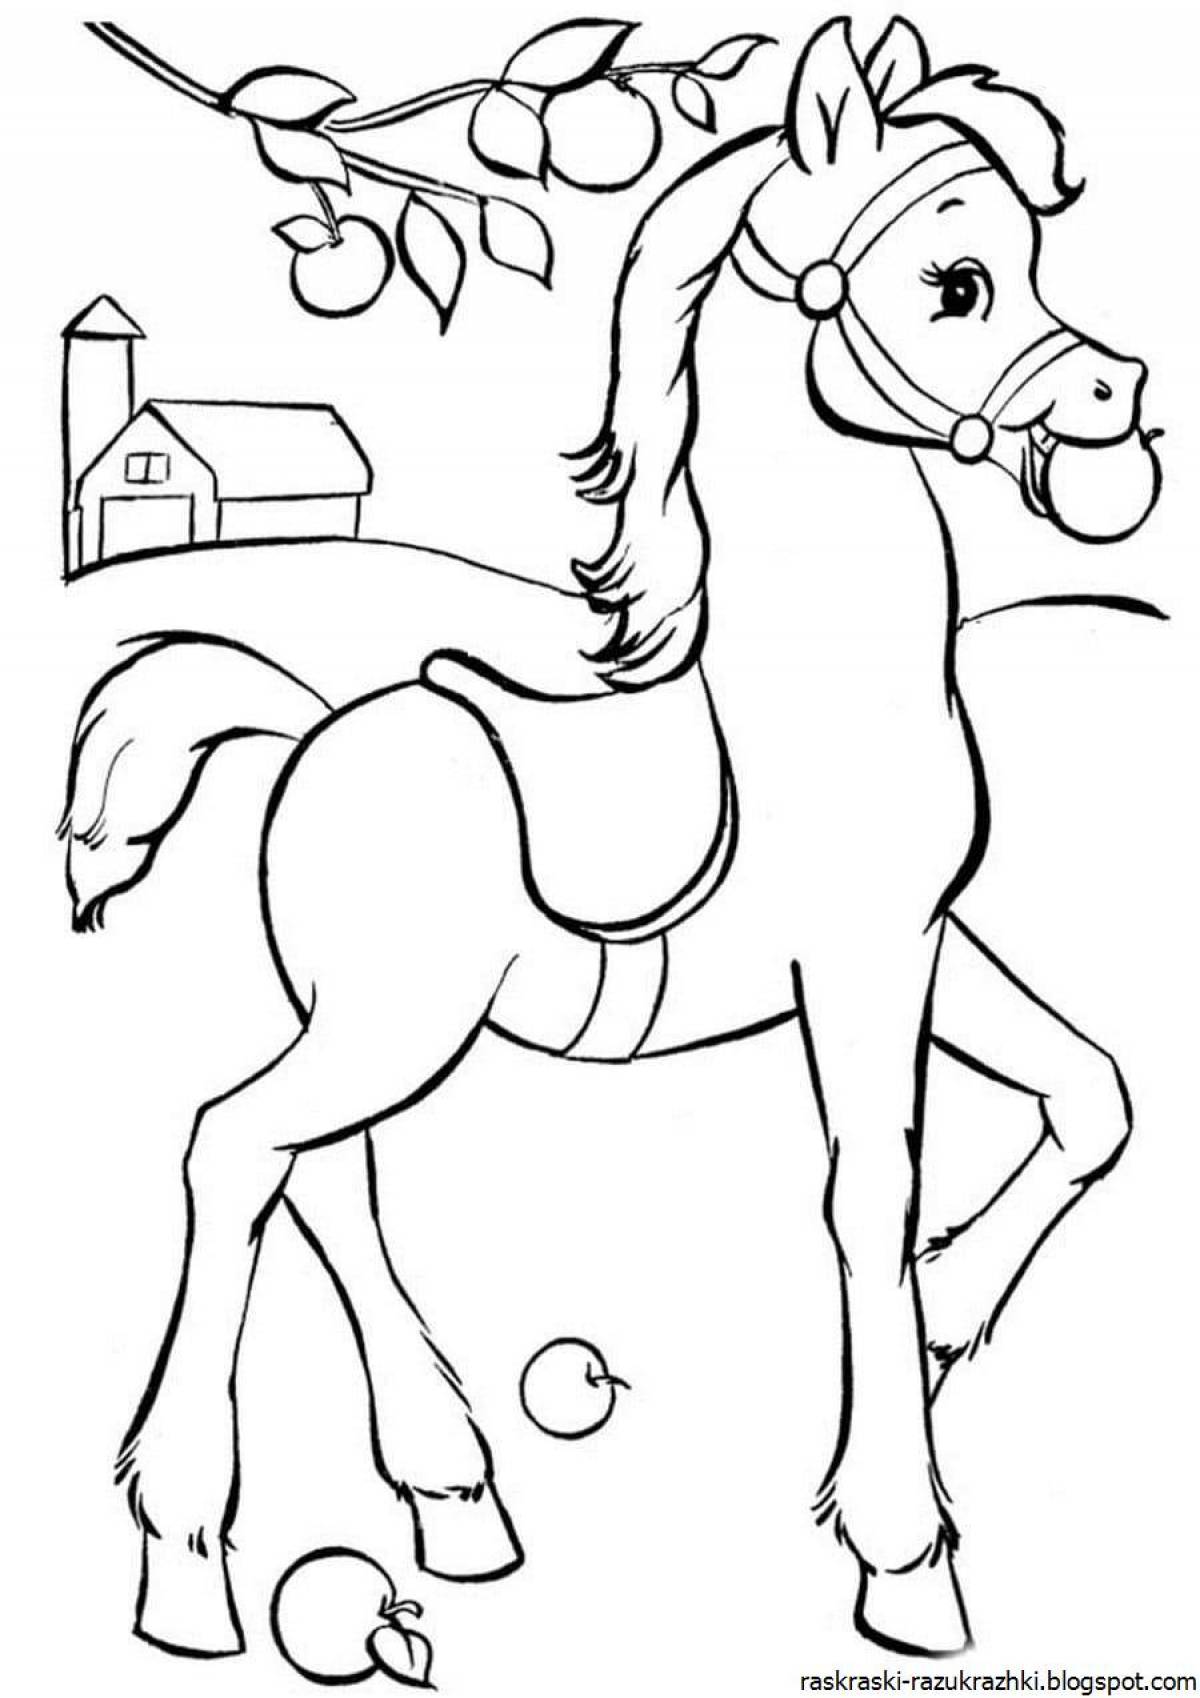 Яркая раскраска лошадь для детей